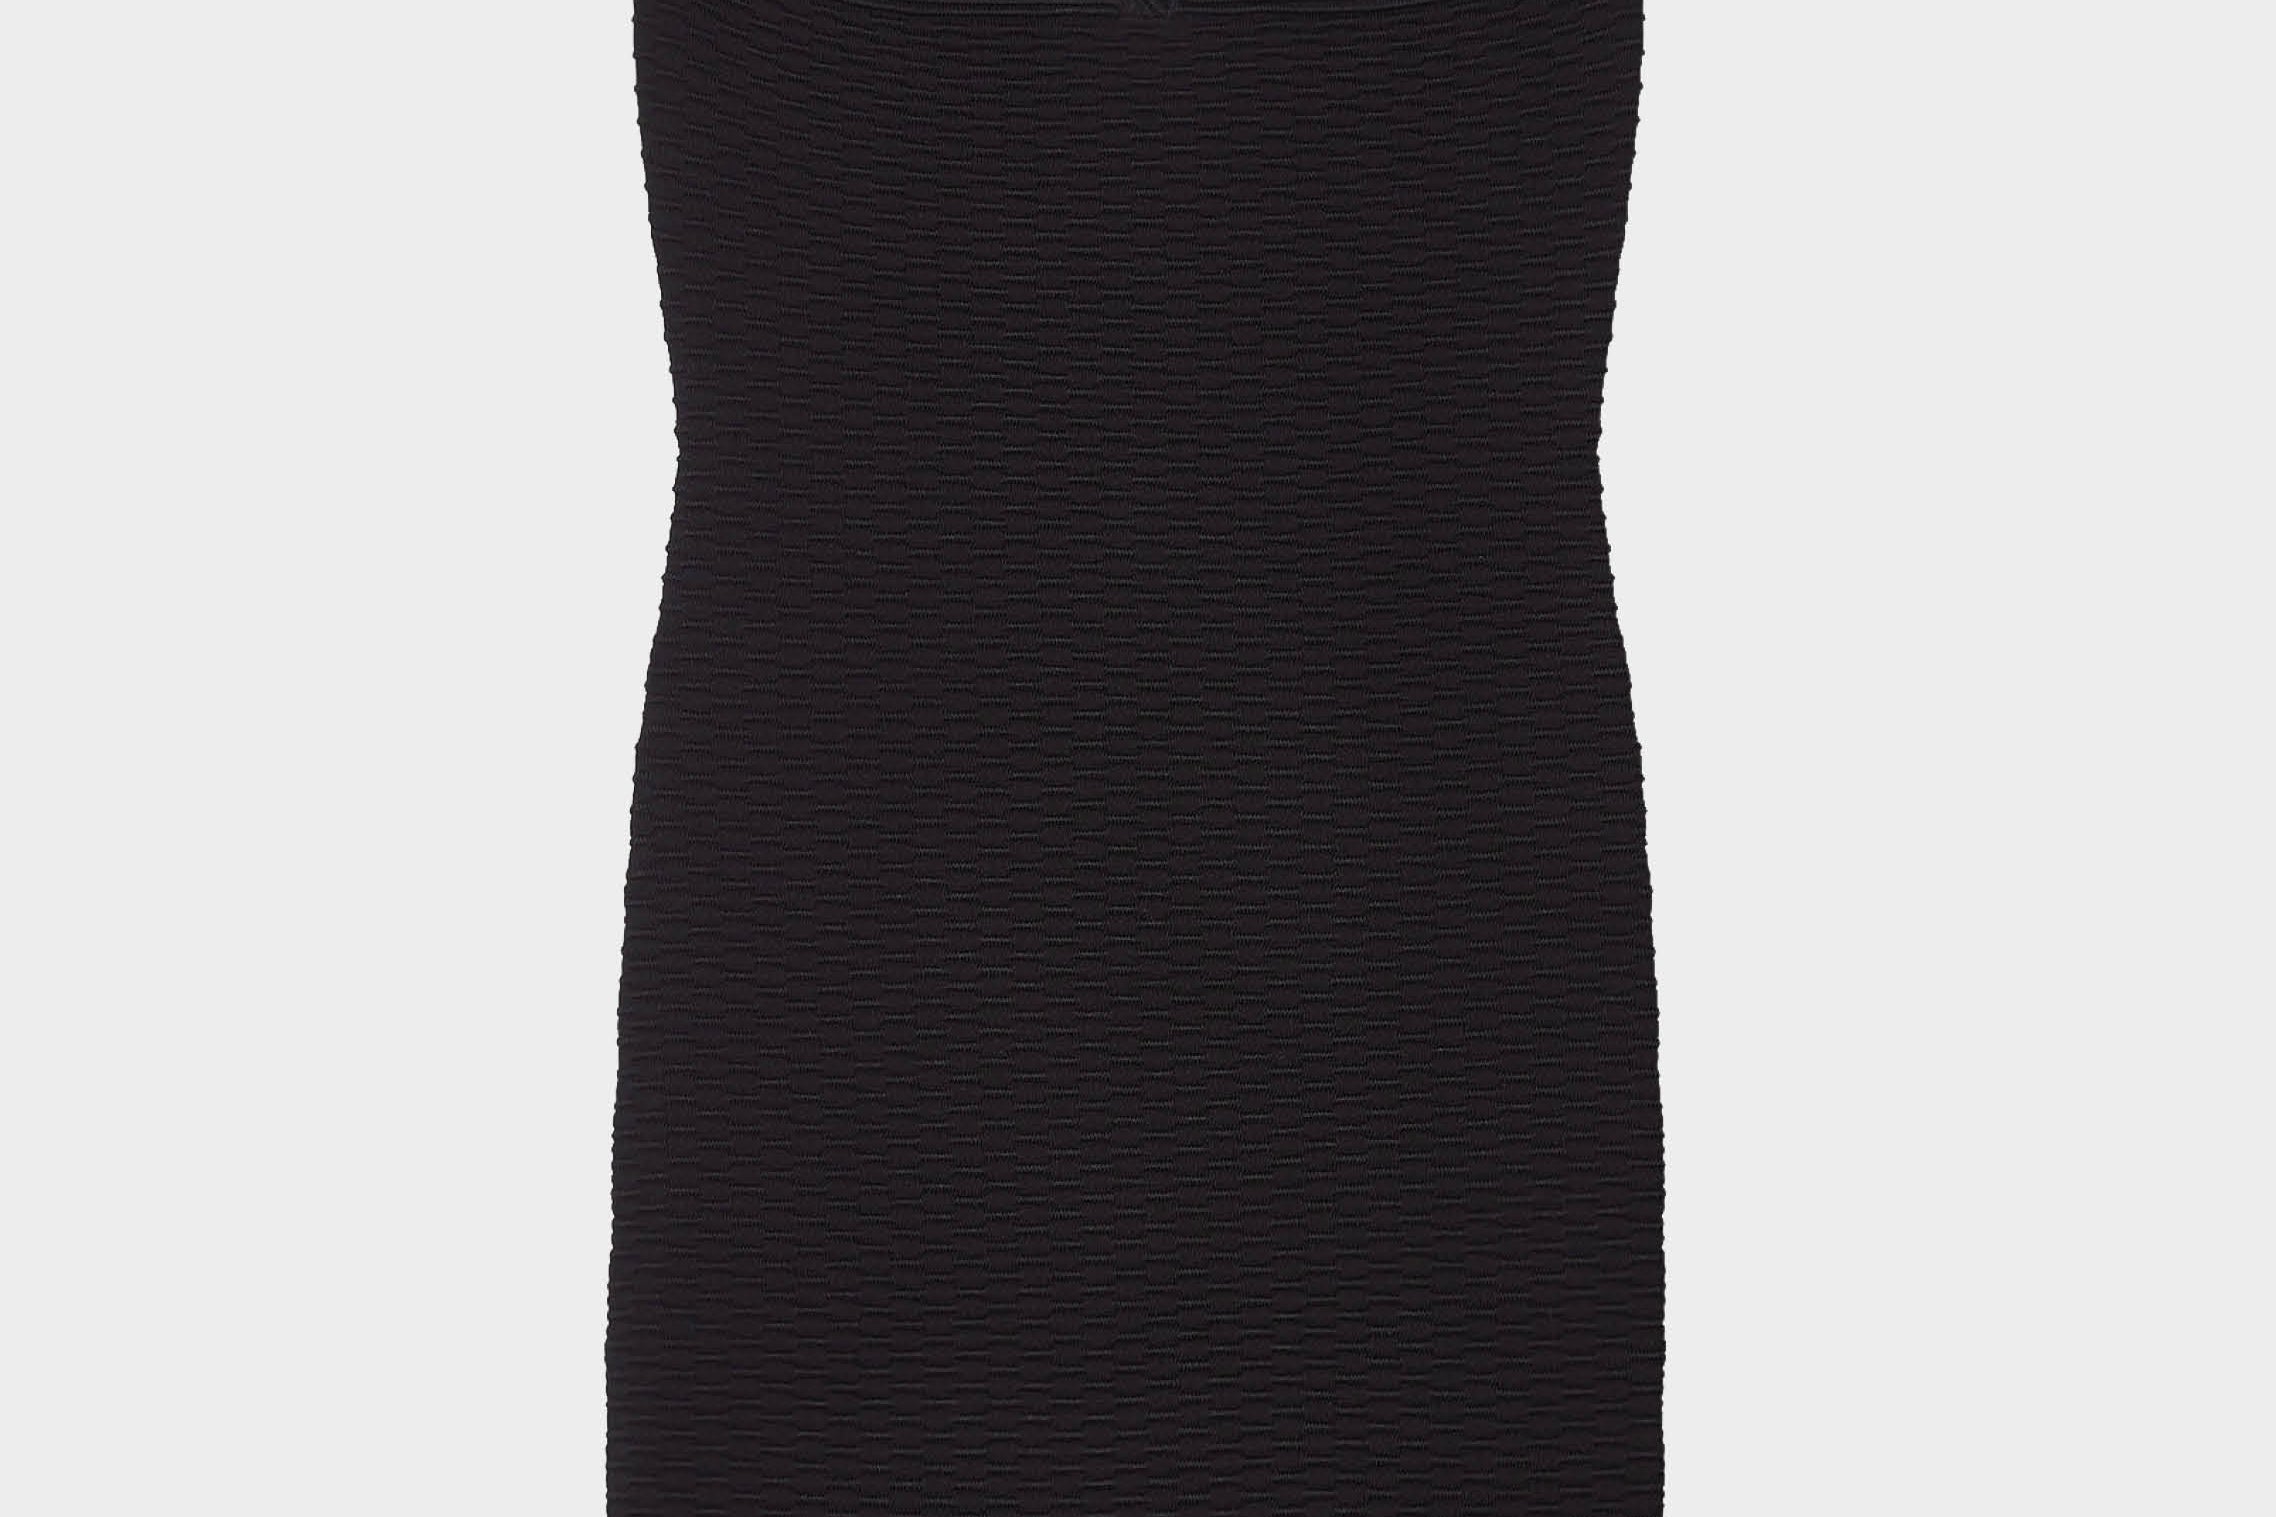 Vestido mini negro escote en forma de corazón de Iro Paris. Envíos gratuitos a partir de 200€. Devoluciones fáciles. 